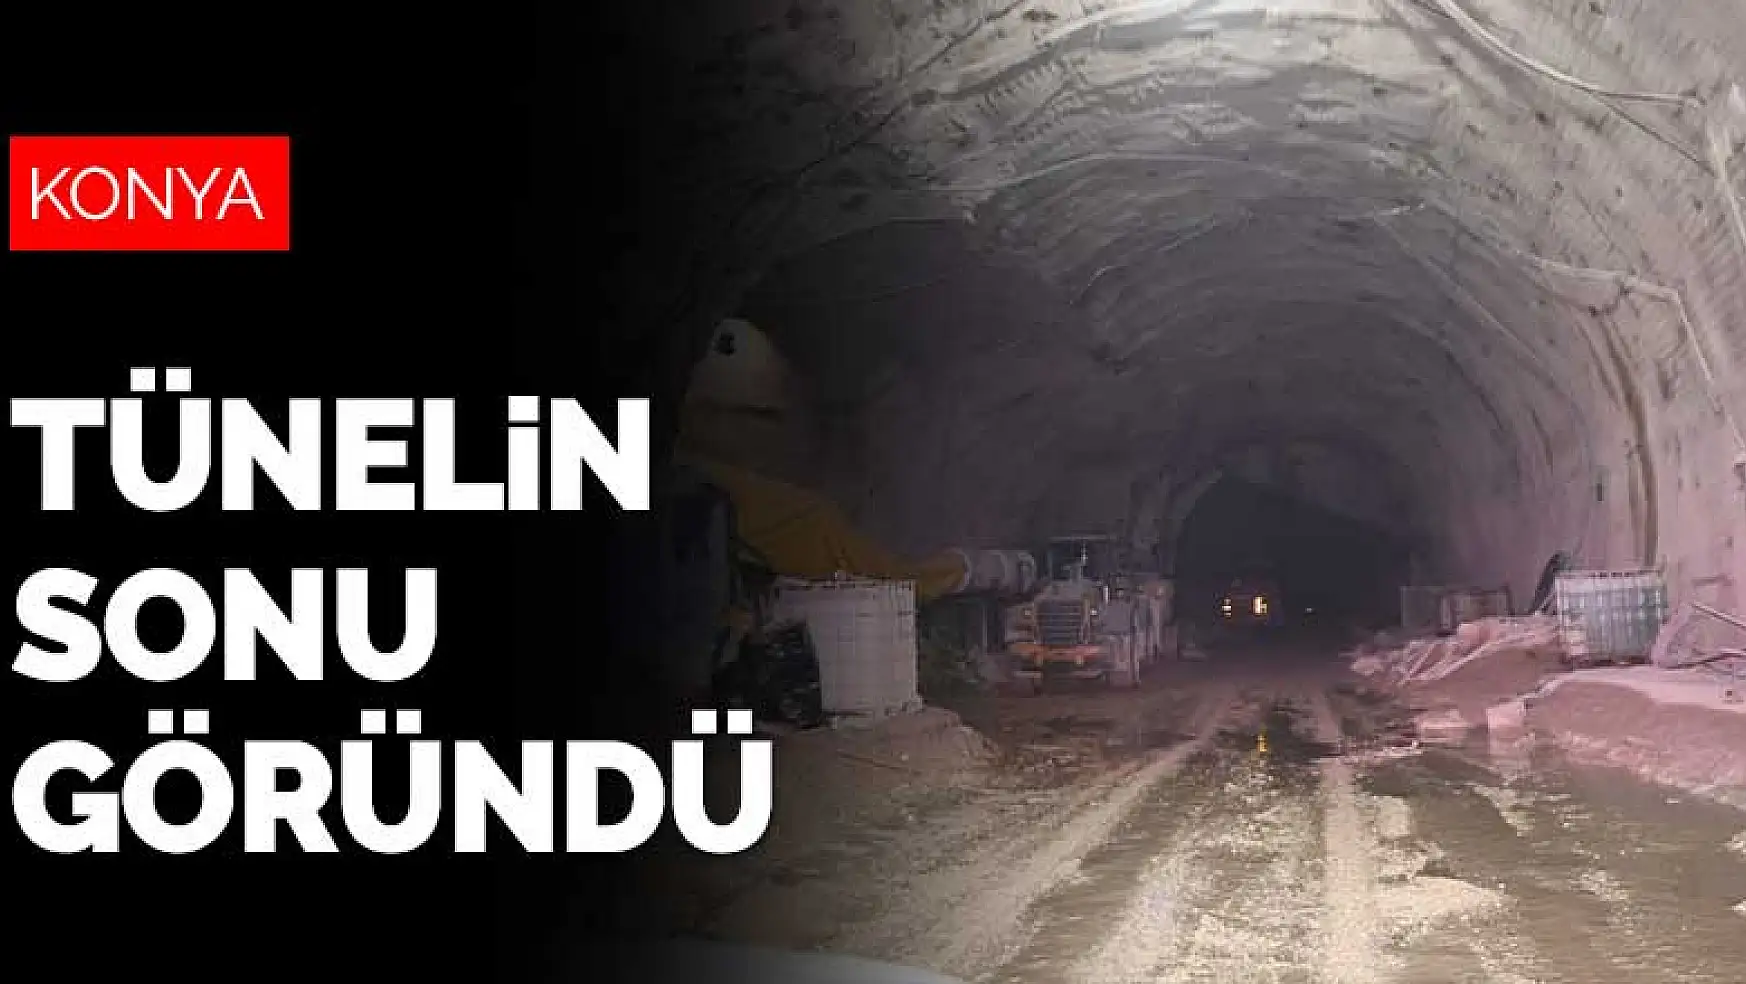 Konya'yı Antalya'ya bağlayan Demirkapı Tüneli'nde son etap